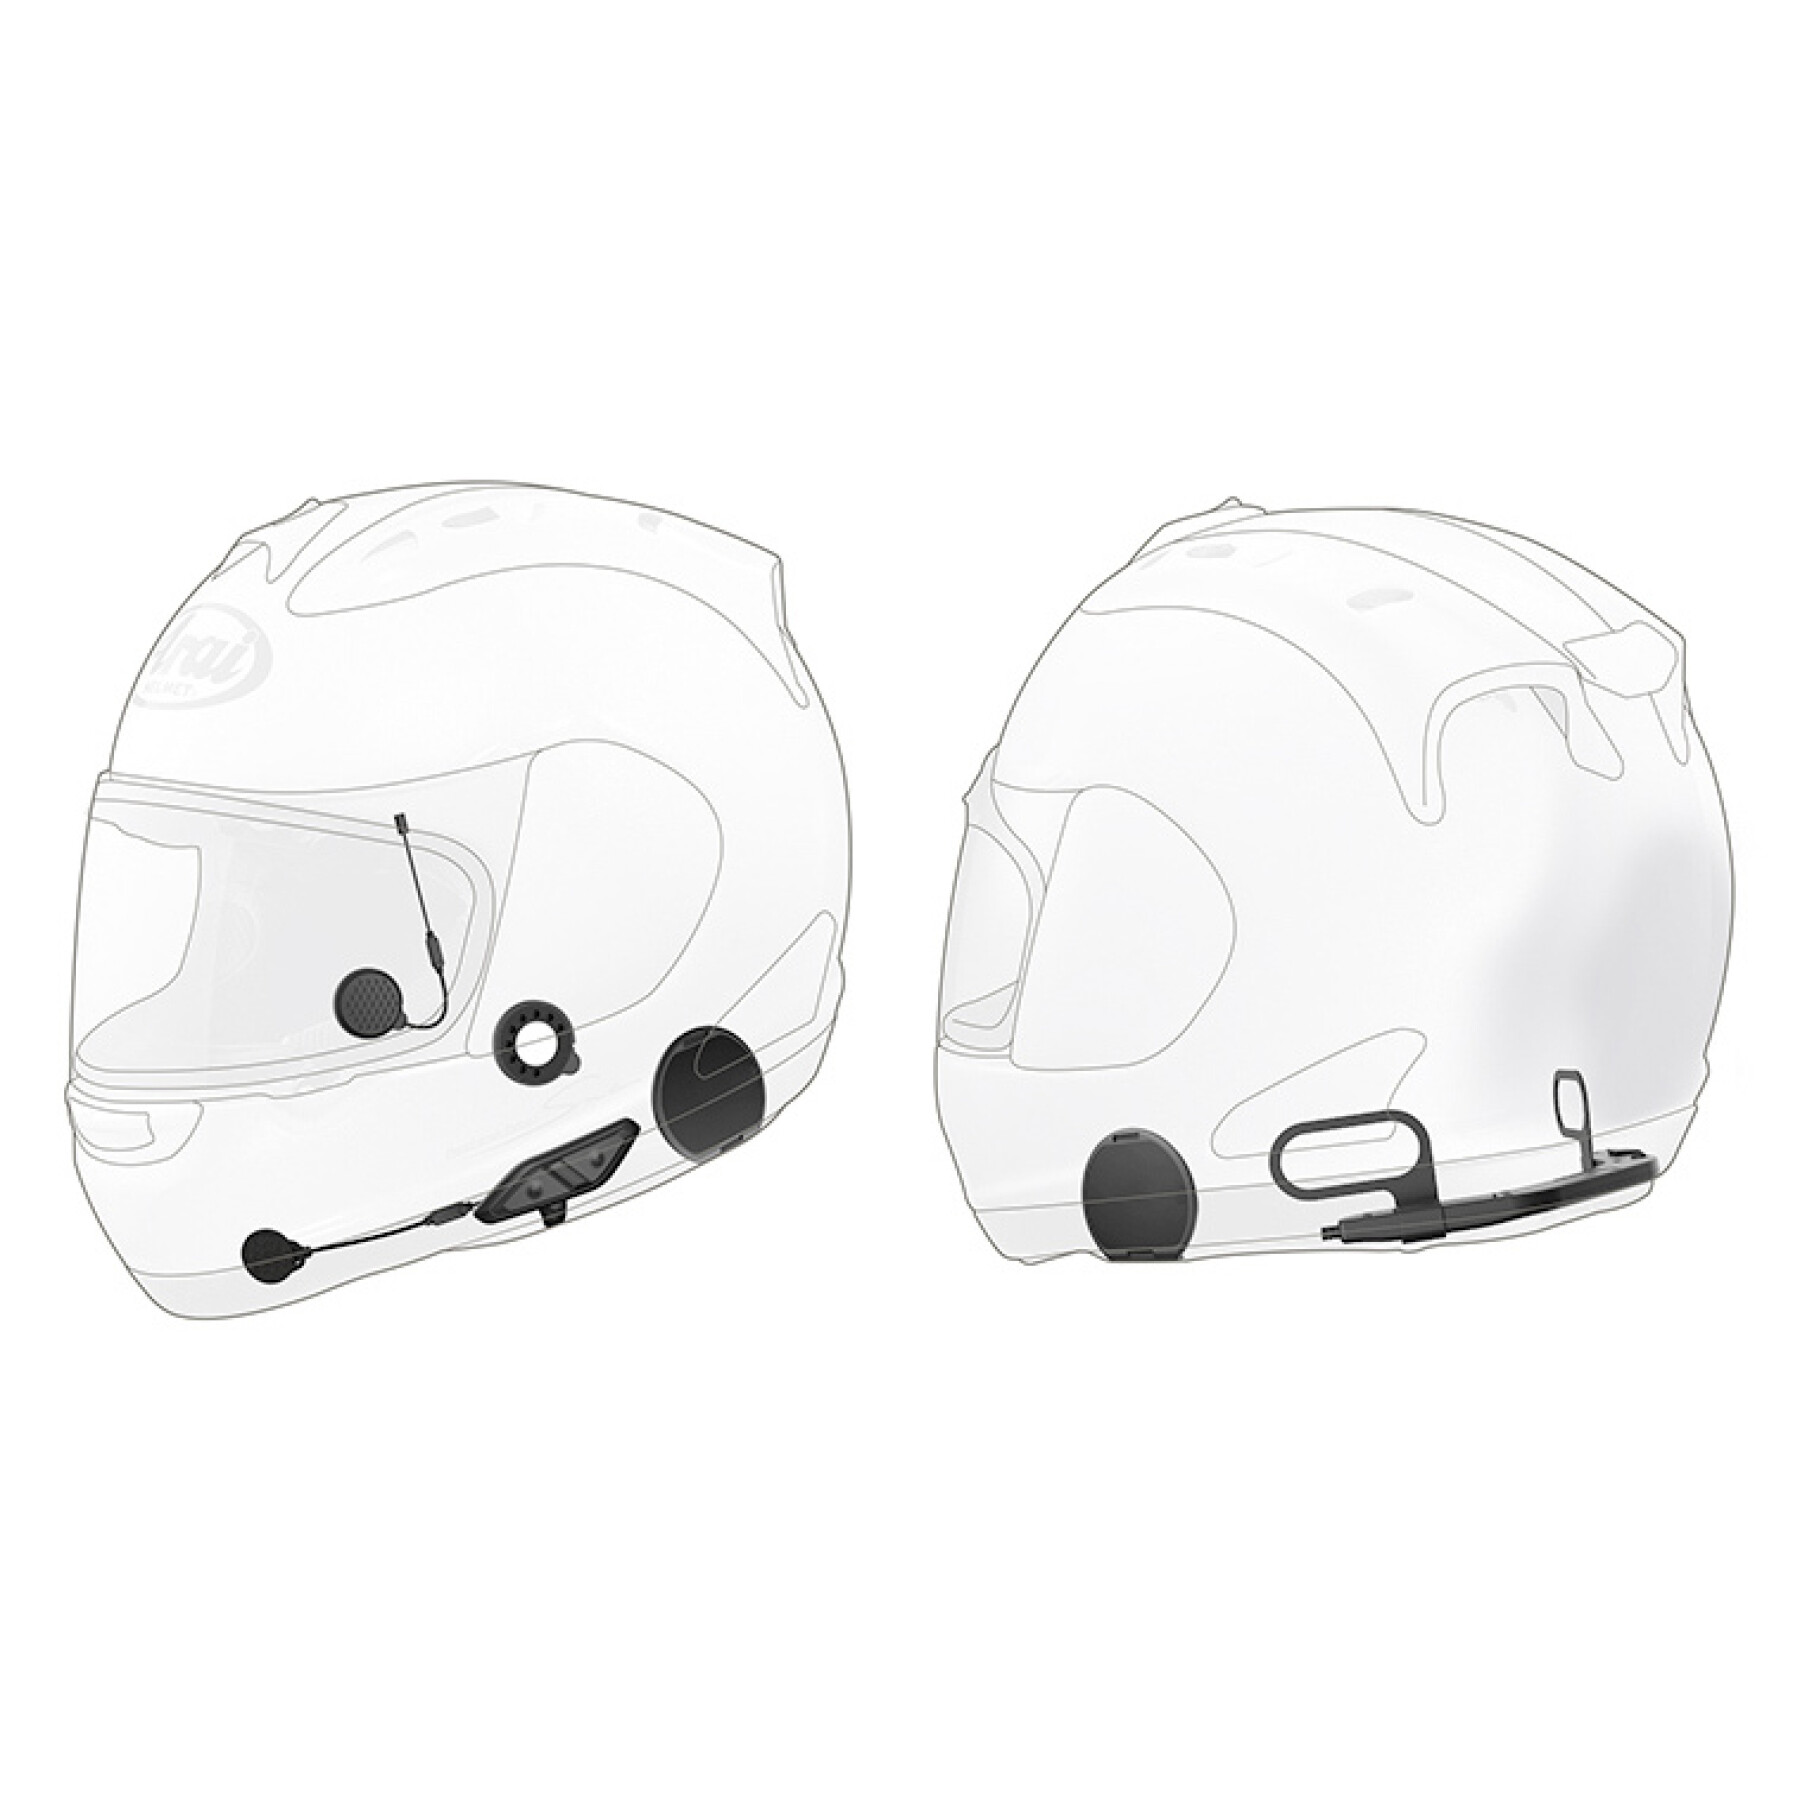 Intercomunicador Bluetooth para motociclos com capacete integral Sena 10U Arai